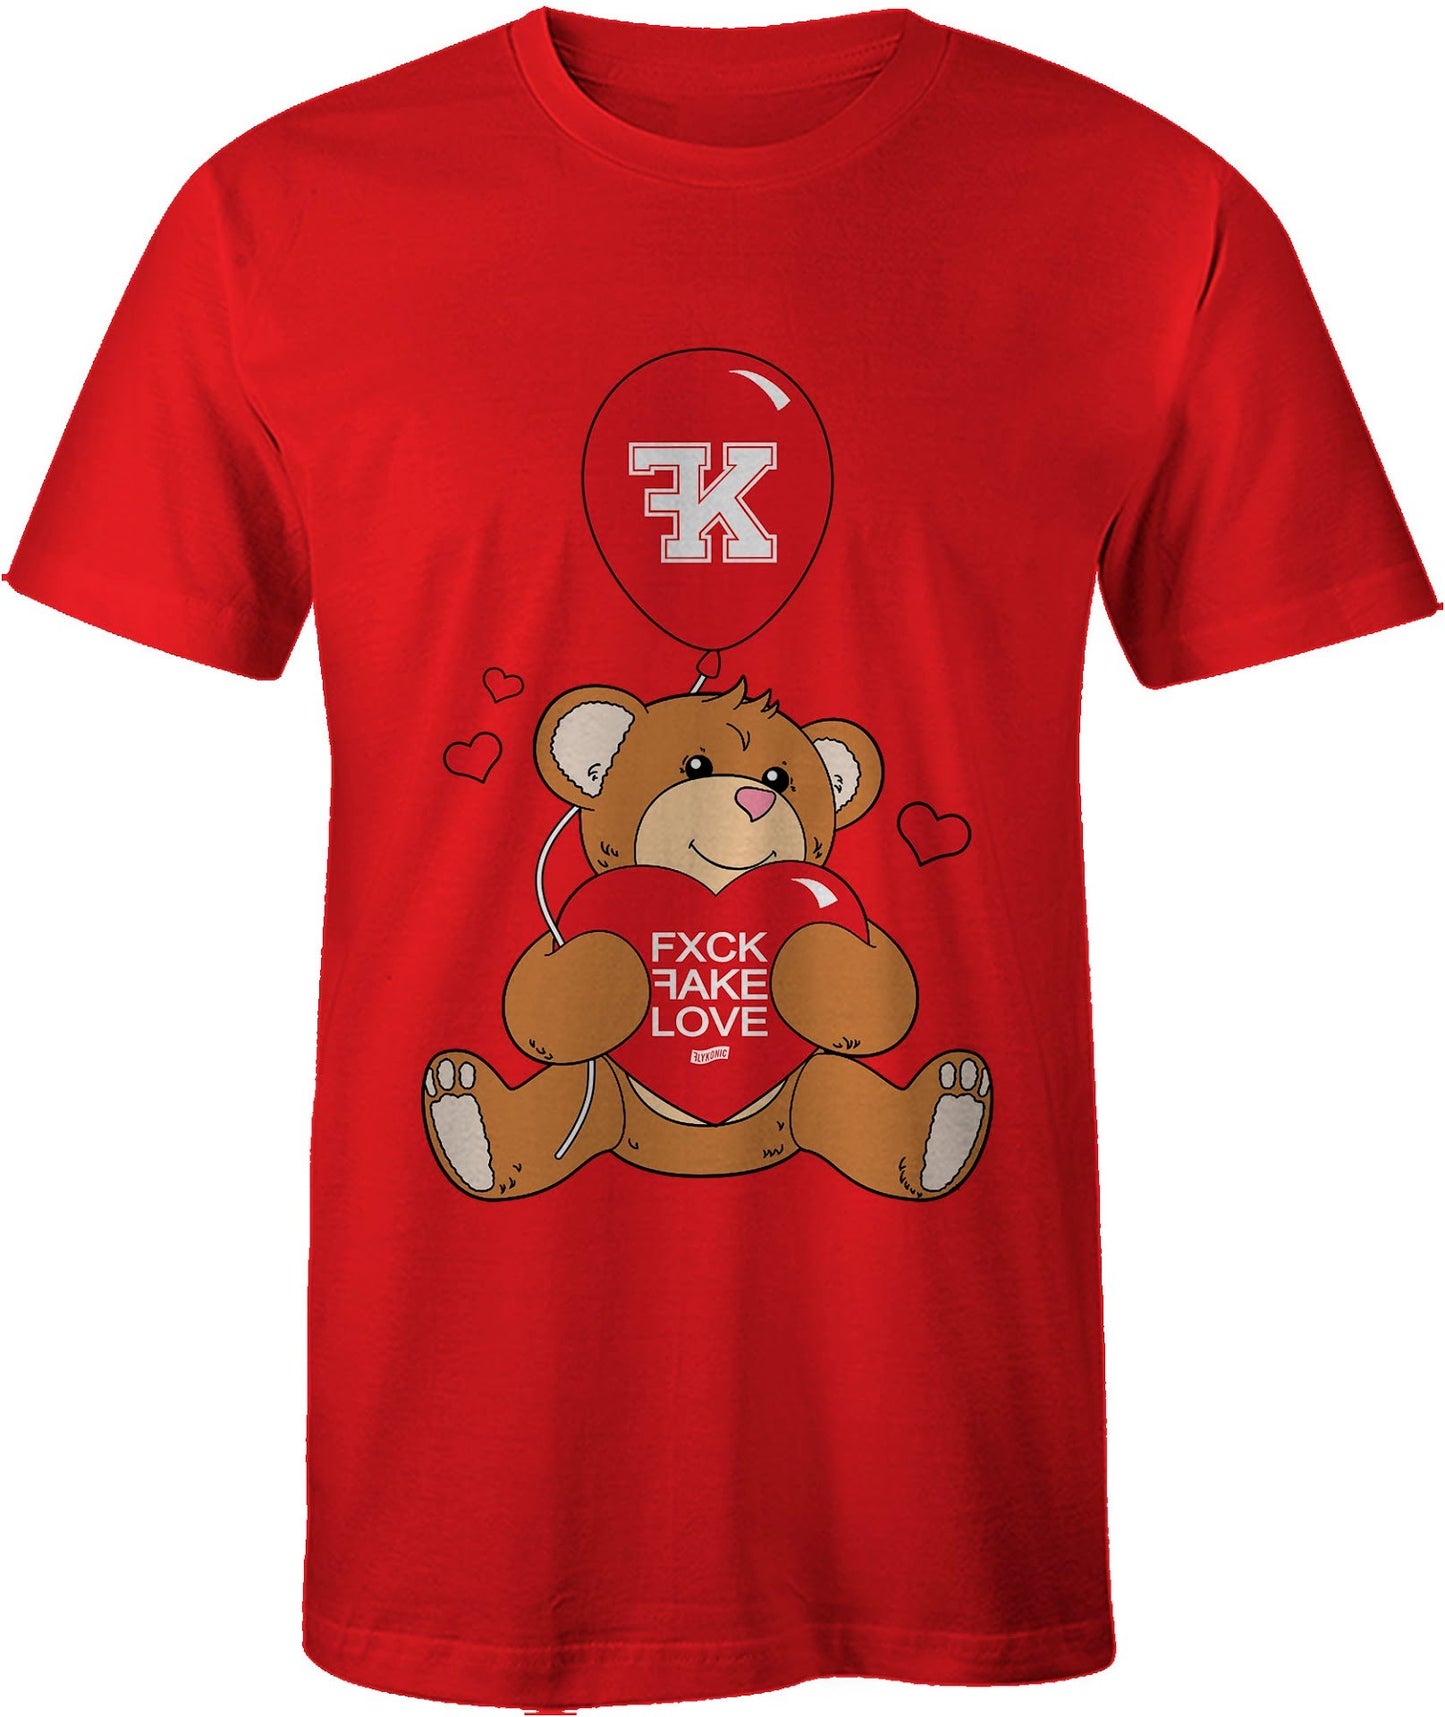 "Fxck FAKE Love Bear"